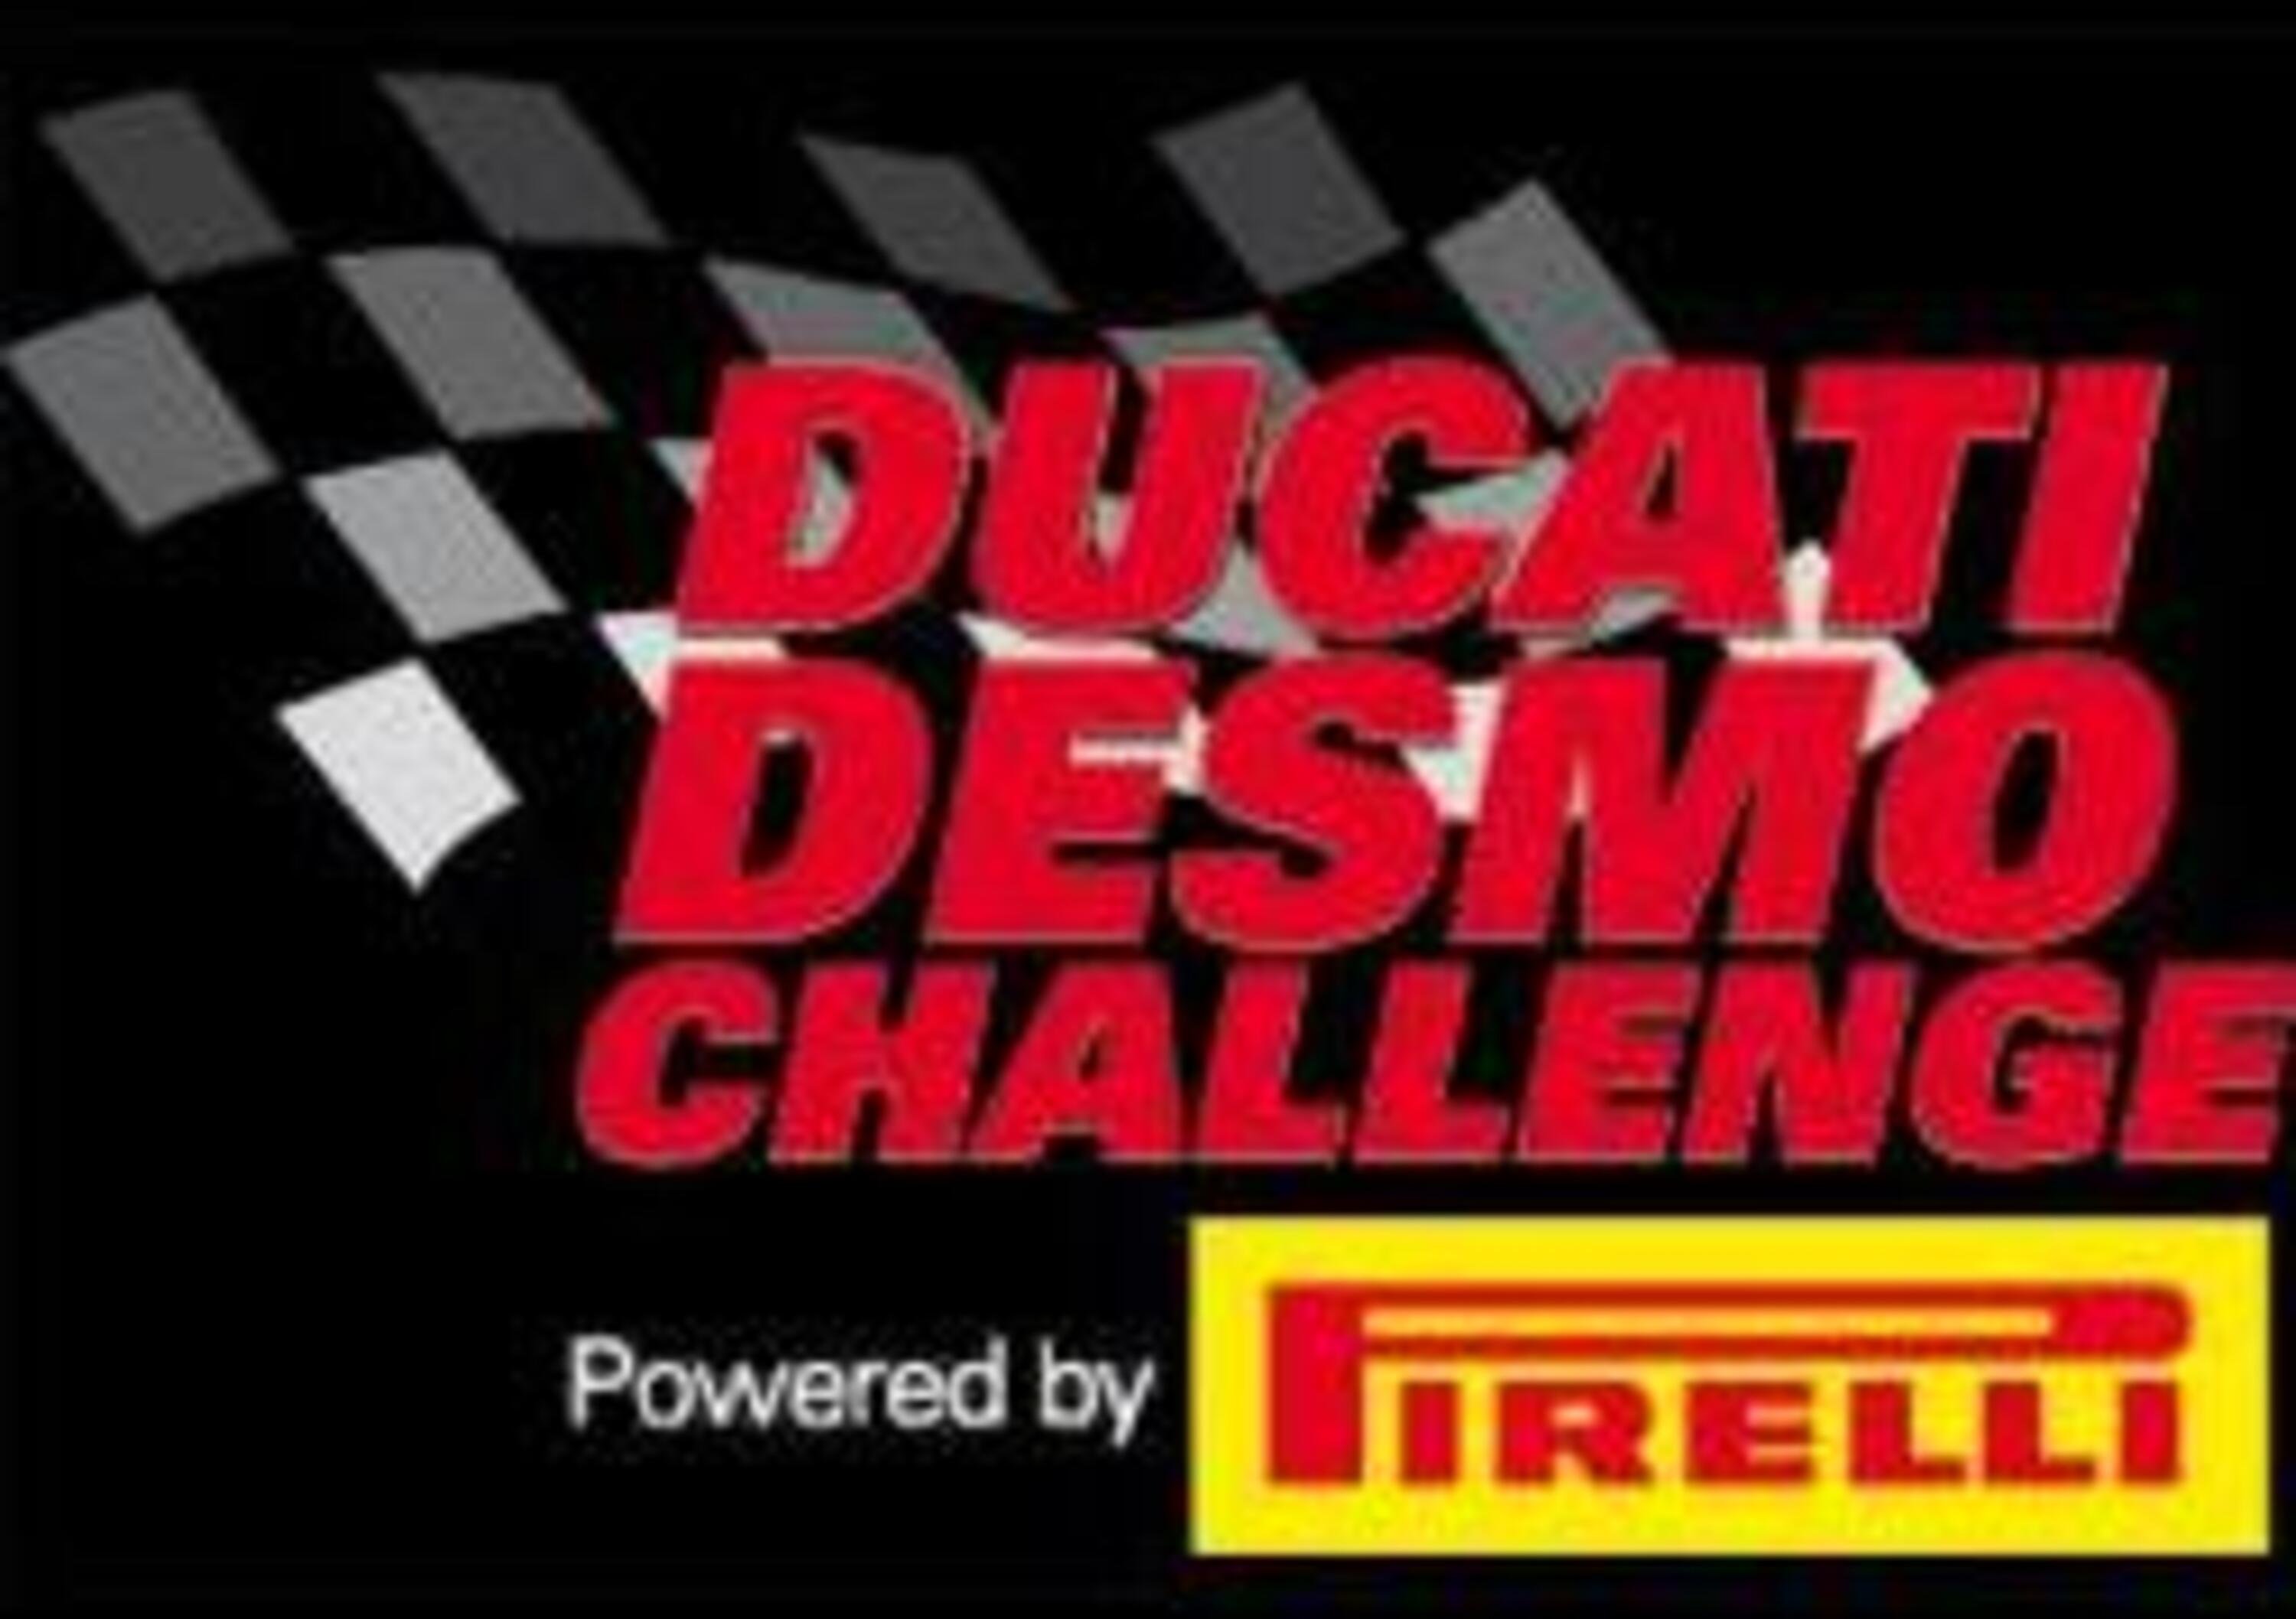 Ducati Desmo Challenge 2010